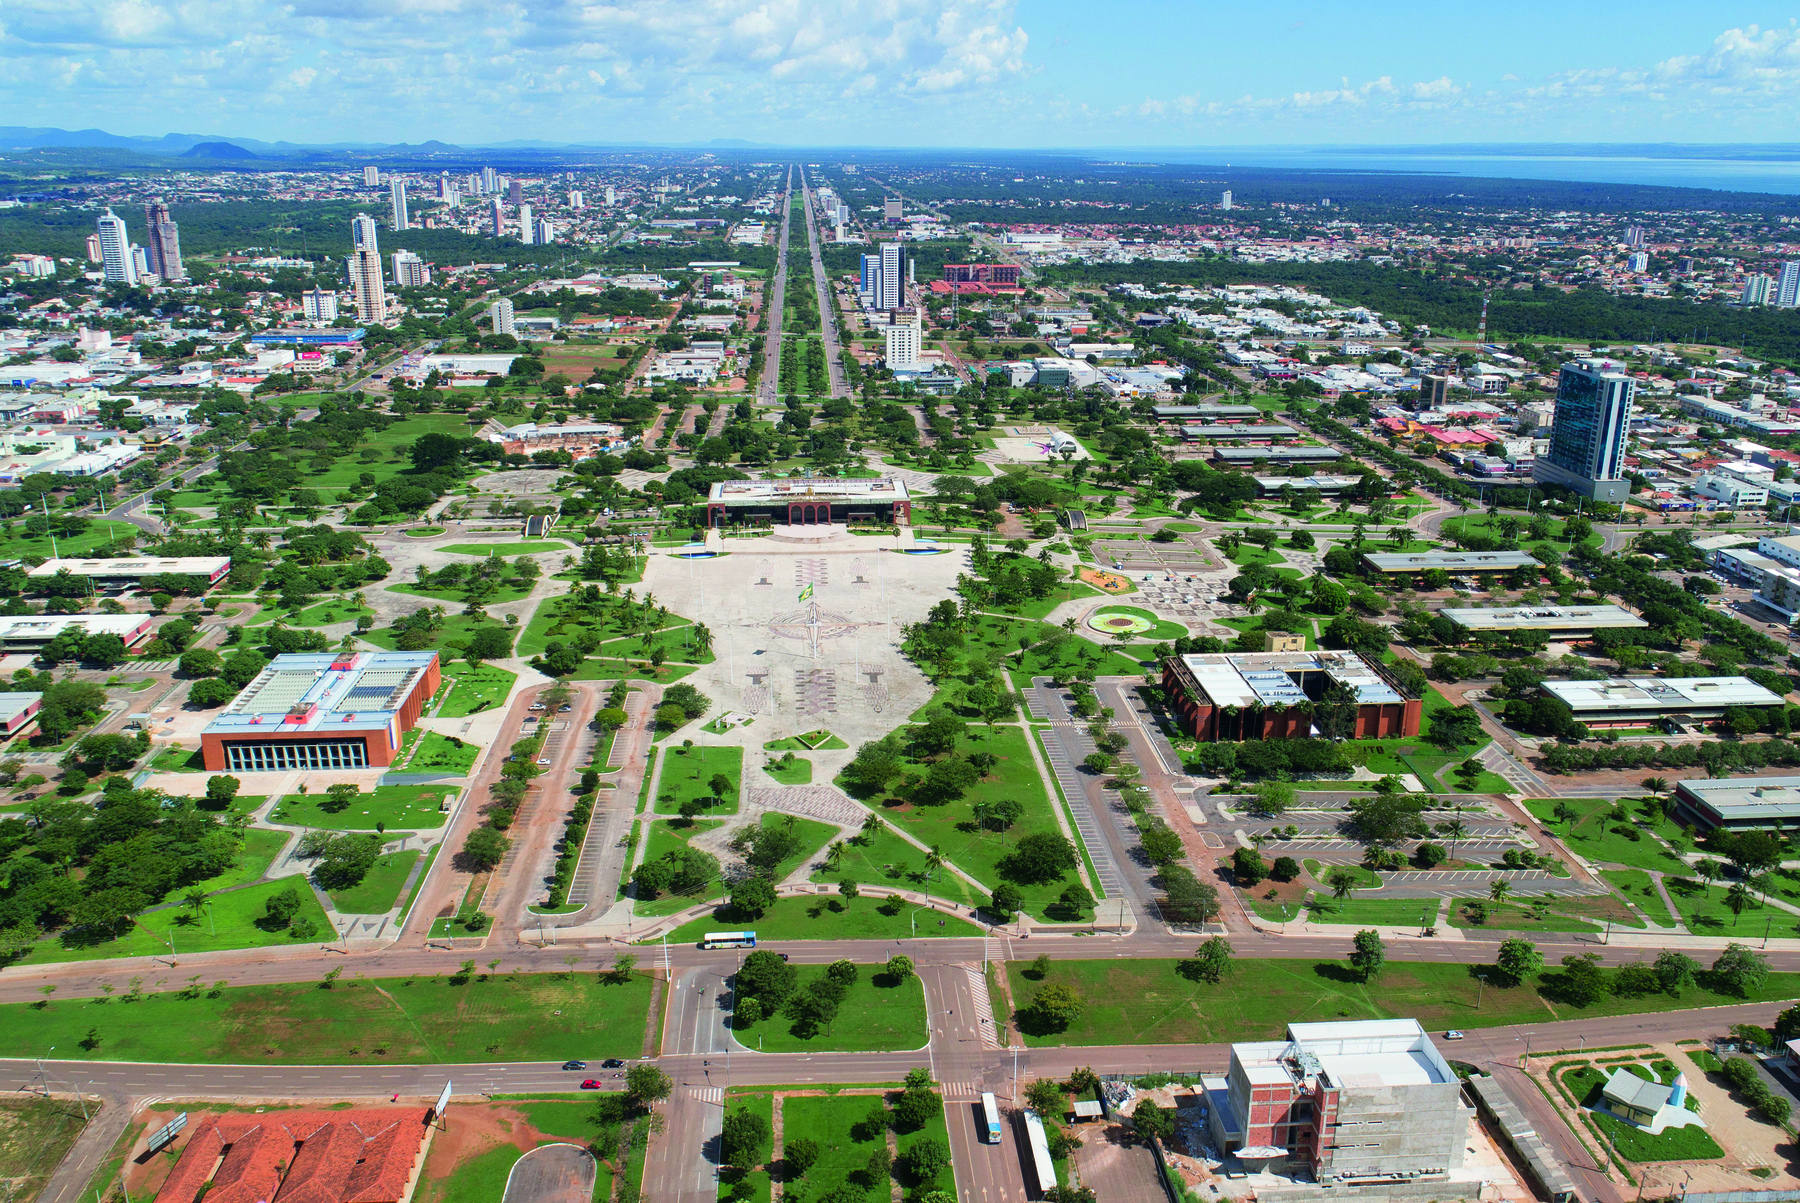 Fotografia. Visão de parte de uma área de Palmas em Tocantins. Região plana com ruas verticais e horizontais. Há construções e pouca vegetação.